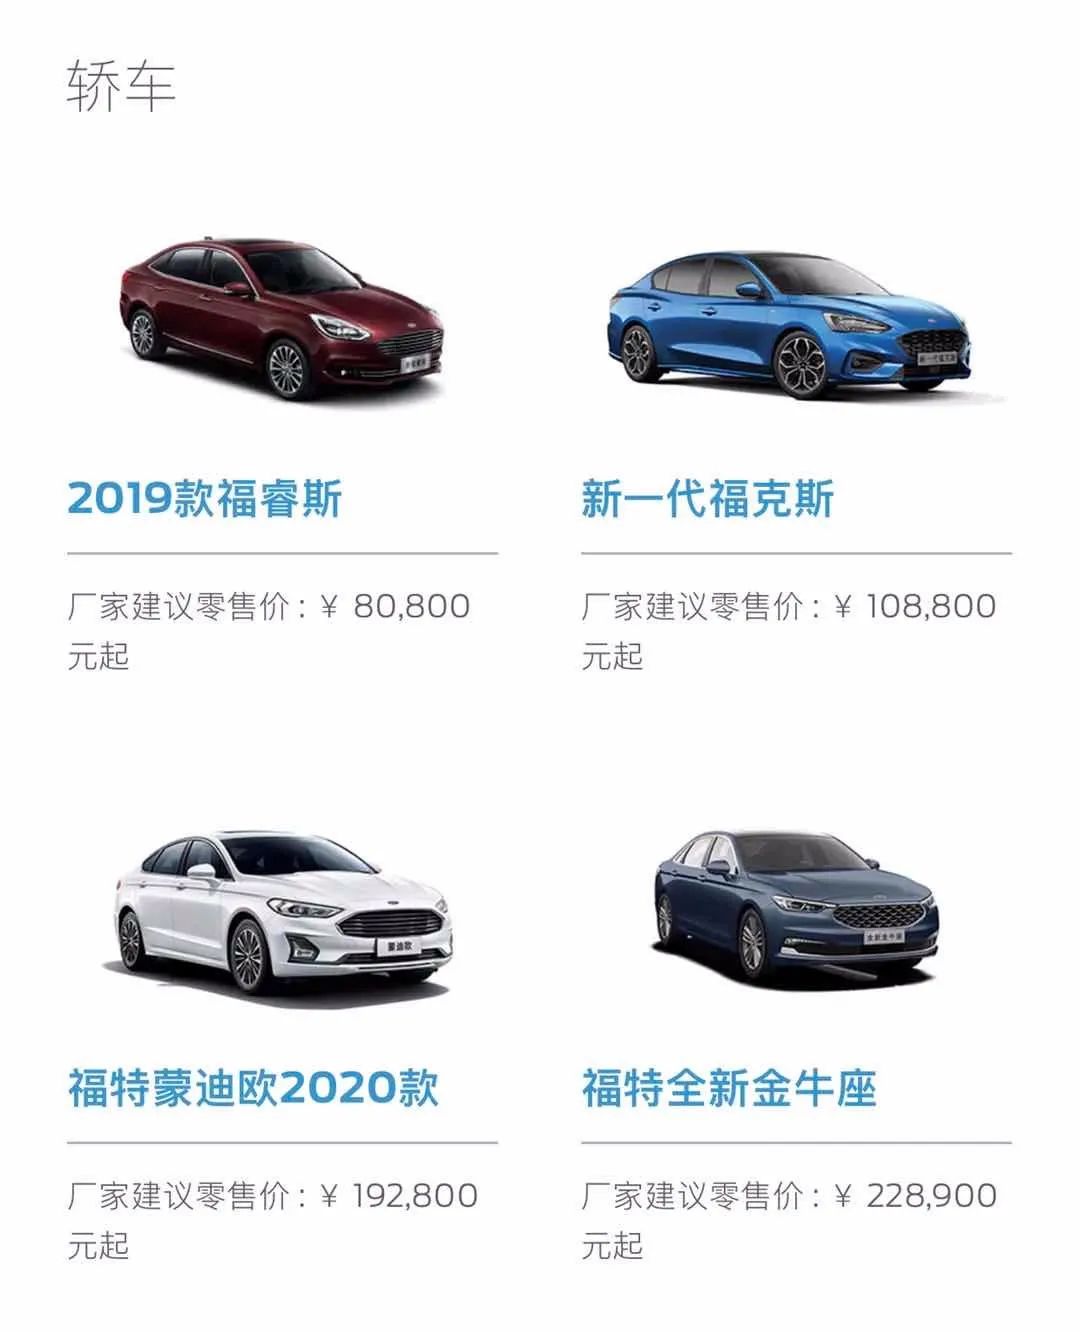 福特目前仅有4款轿车车型在售